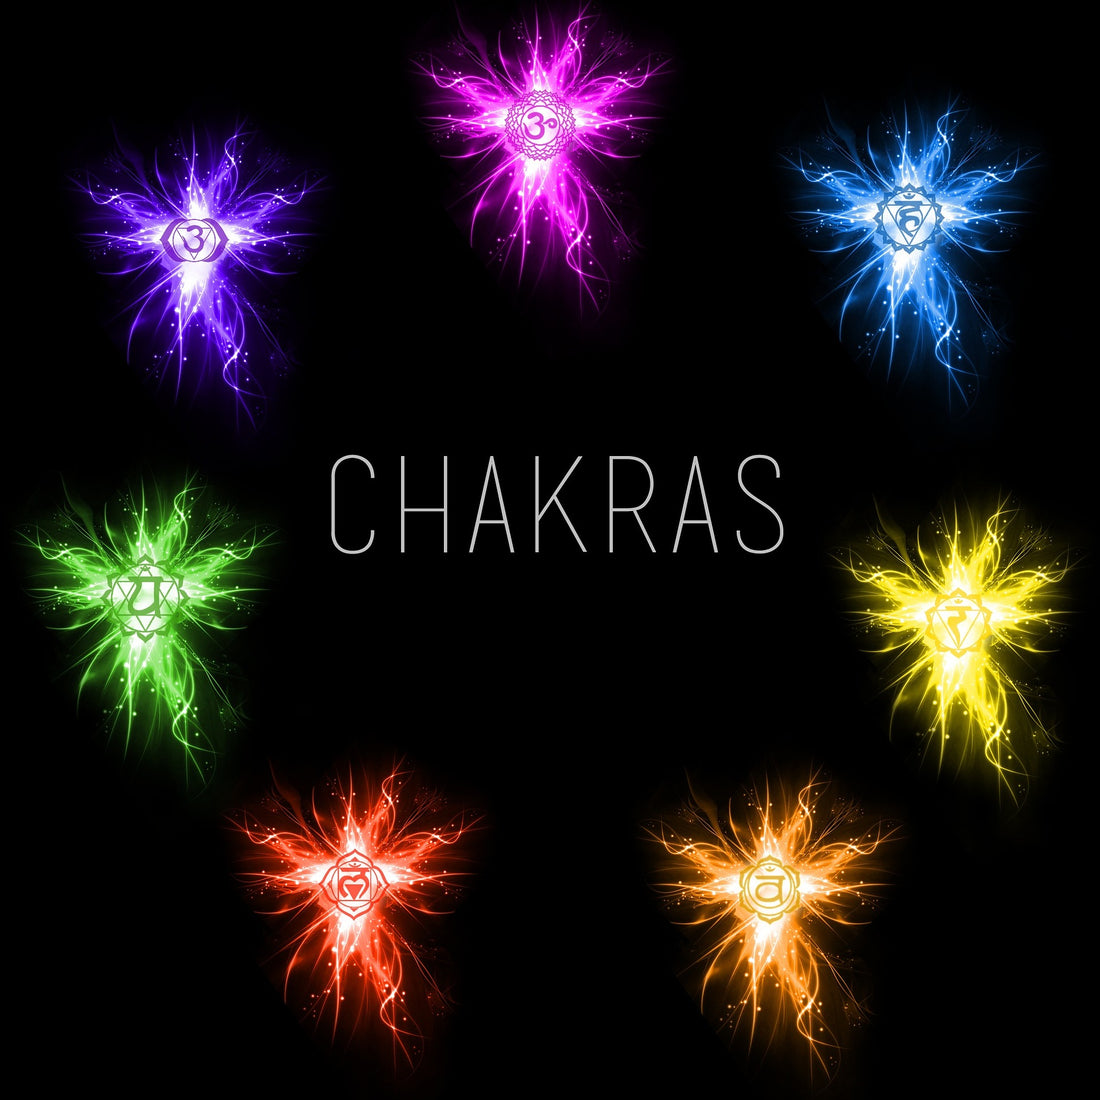 das Chakra- dein Energiezentrum